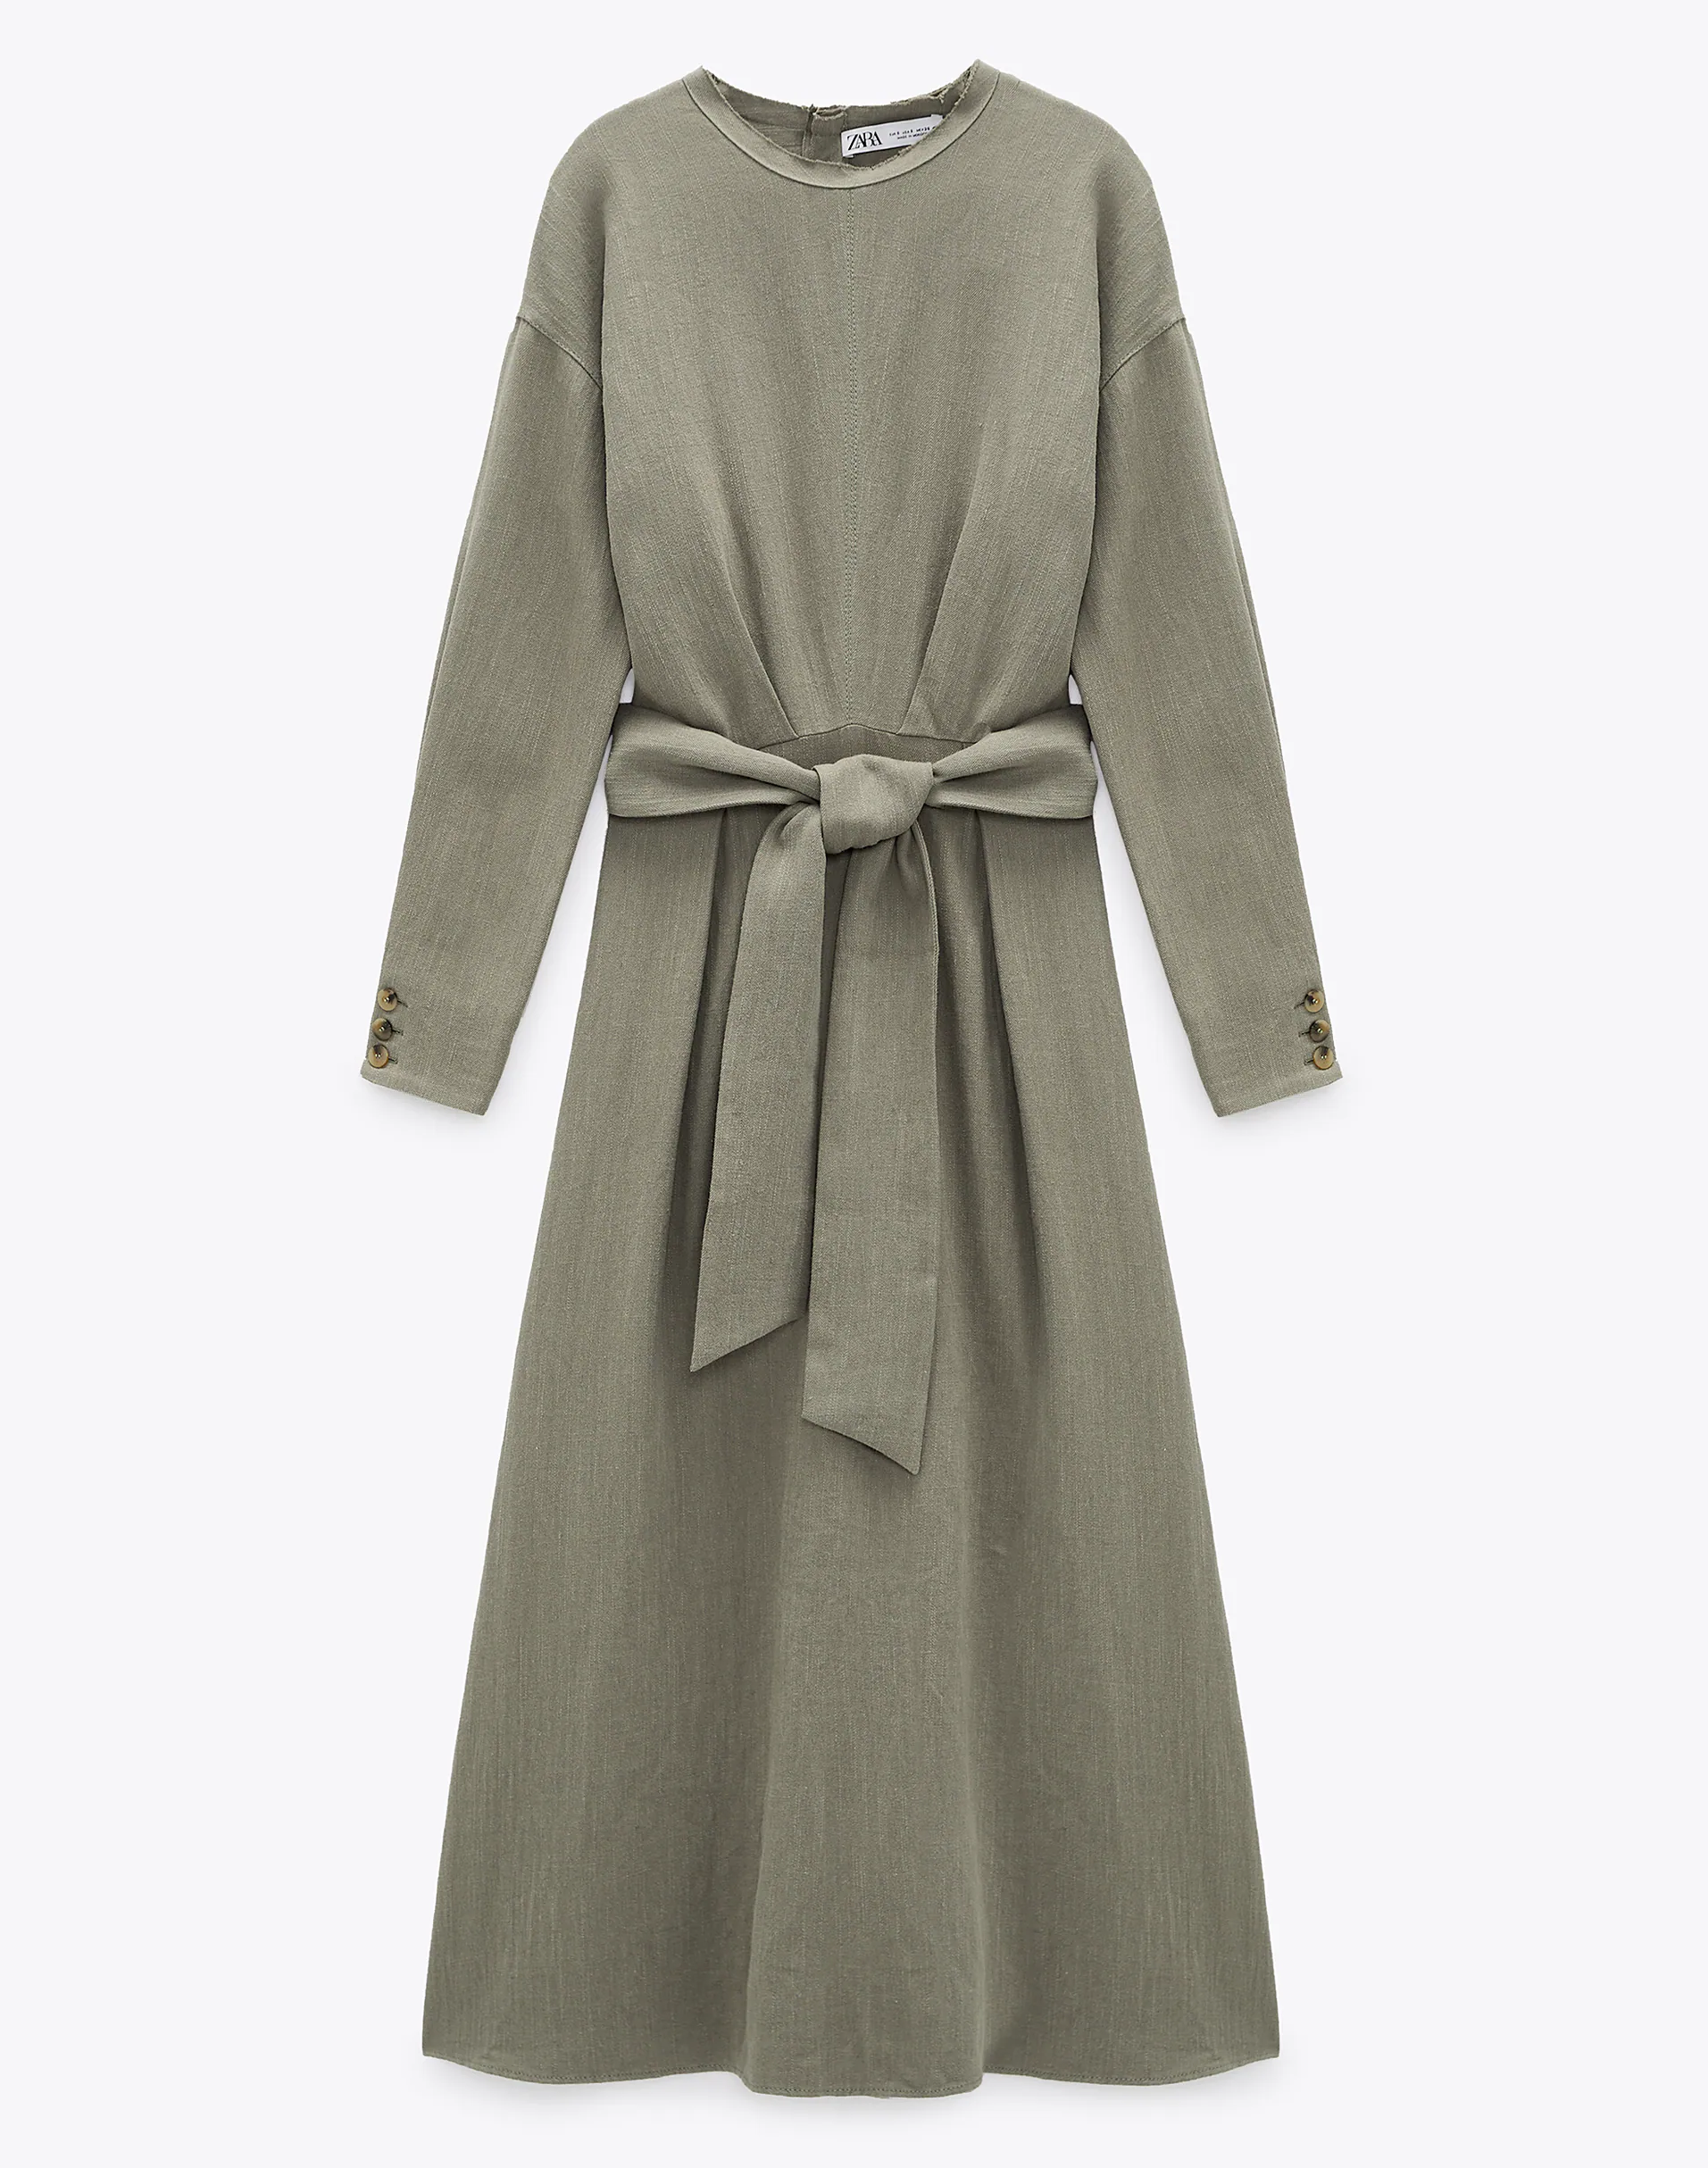 Vestido mido con lino de Zara. 25,99 euros